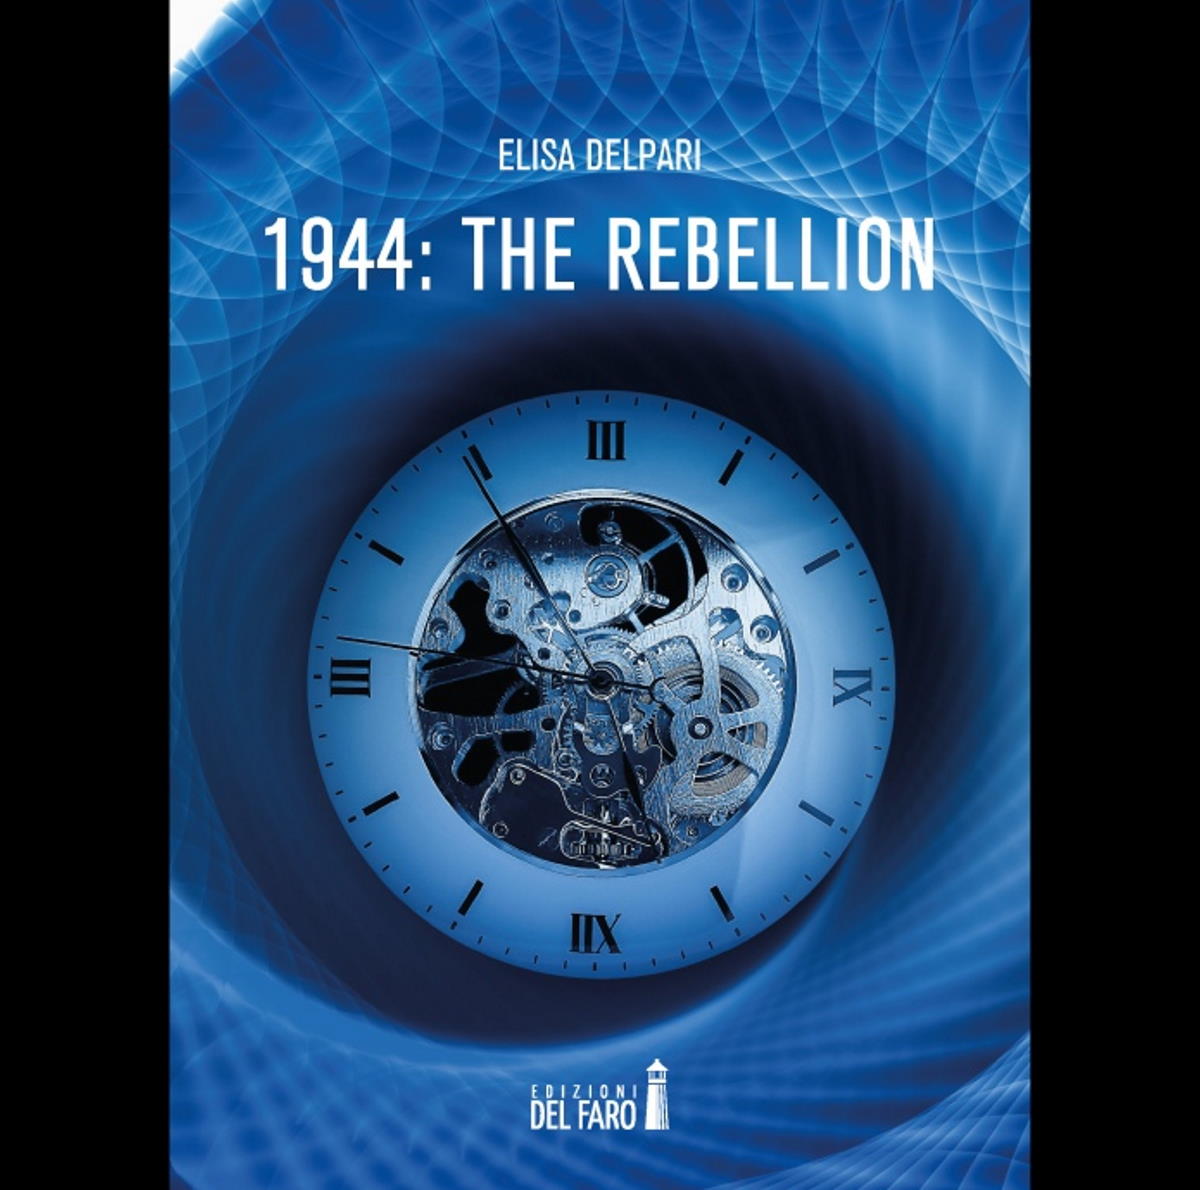 Elisa Delpari annuncia l’uscita del suo primo romanzo “1944: The rebellion”